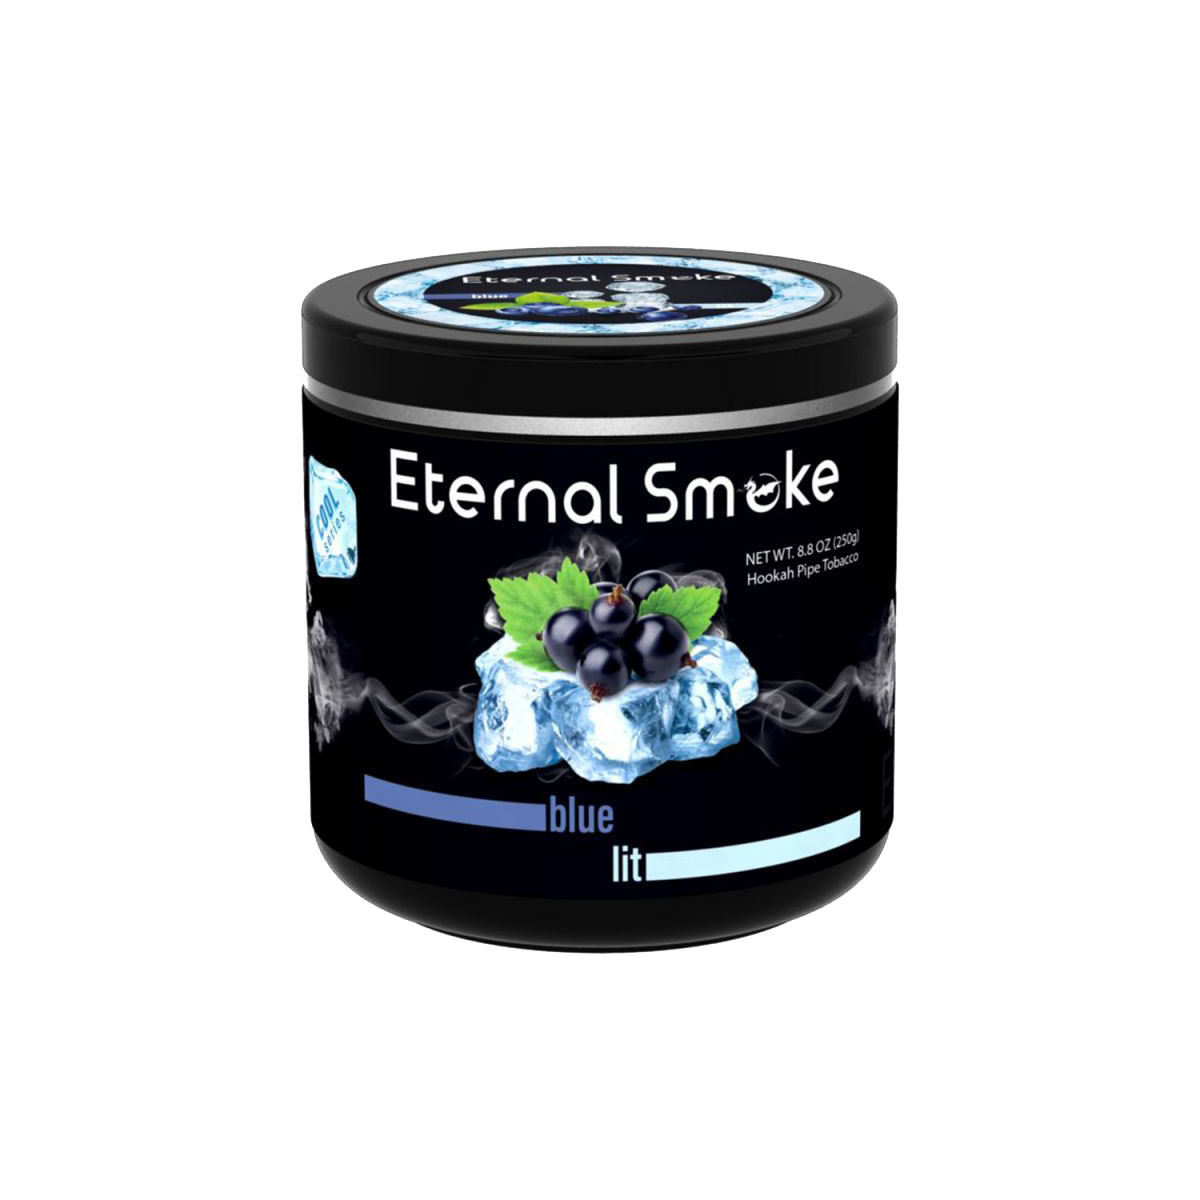 Eternal Smoke Shisha Tobacco Blue Lit - Lavoo